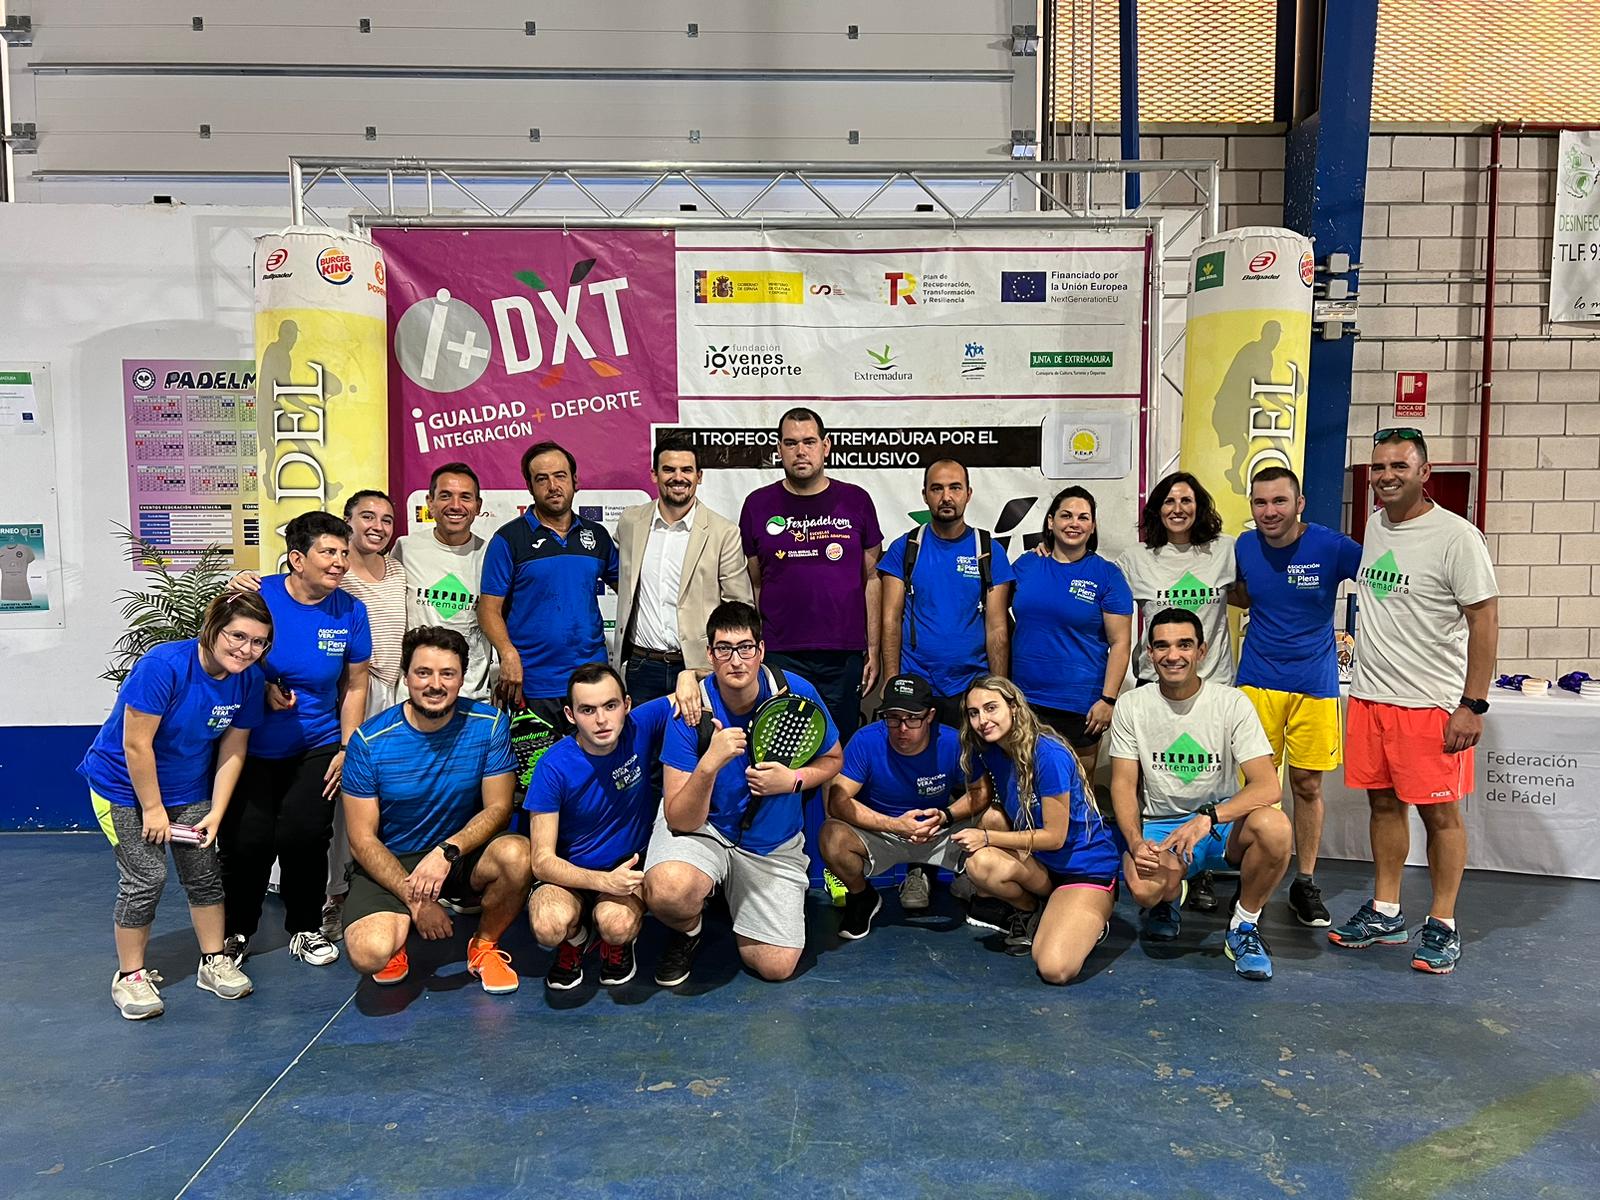 Image 2 of article La Junta apuesta por la inclusión en el deporte con la celebración del I Torneo de Pádel Inclusivo